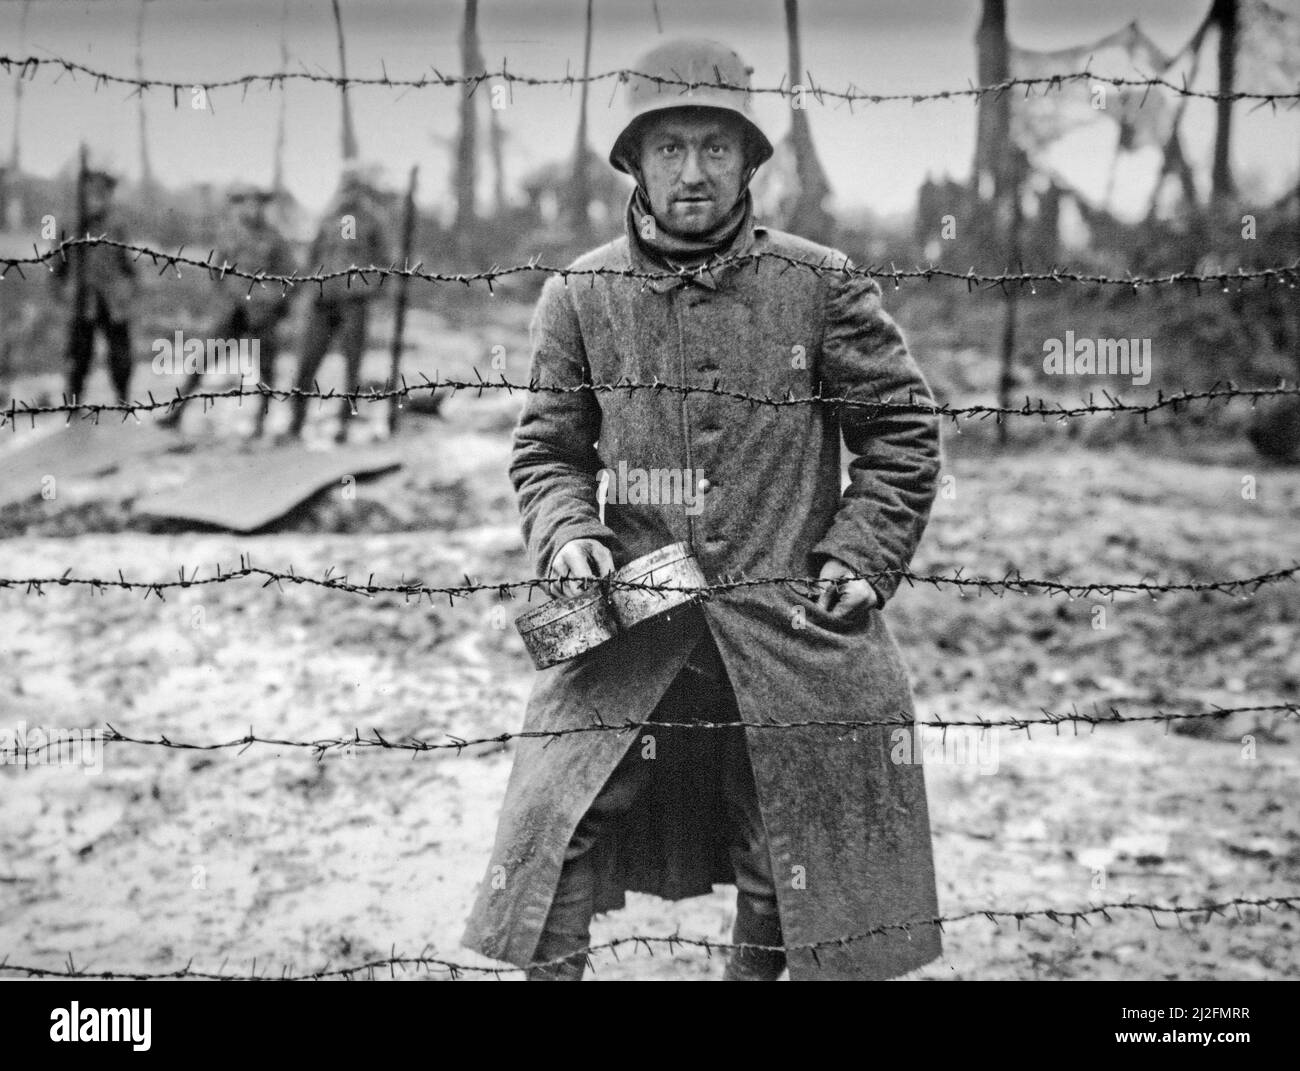 Prima guerra mondiale prigioniero di guerra tedesco dietro filo spinato del campo di POW a Langemarck, Fiandre Occidentali, Belgio nel 1917 durante la prima guerra mondiale Foto Stock